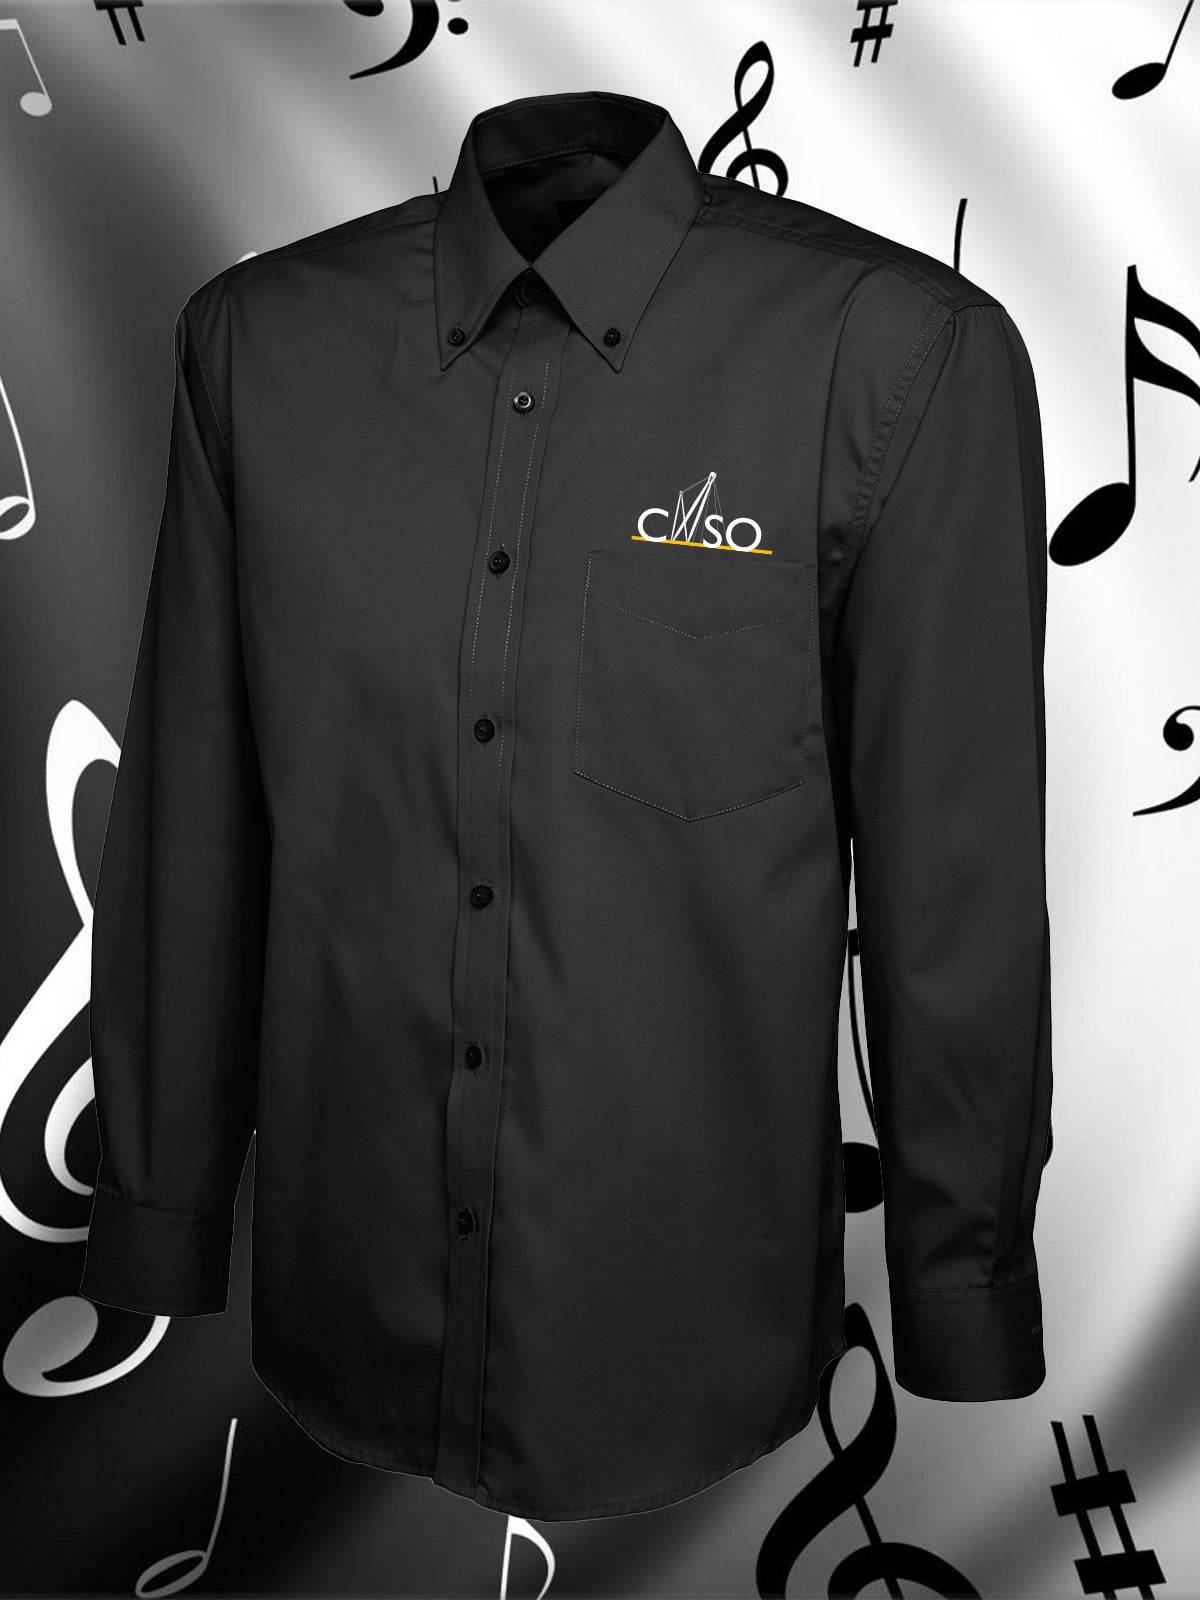 CNSO - UC701 Black Long Sleeve Oxford Shirt